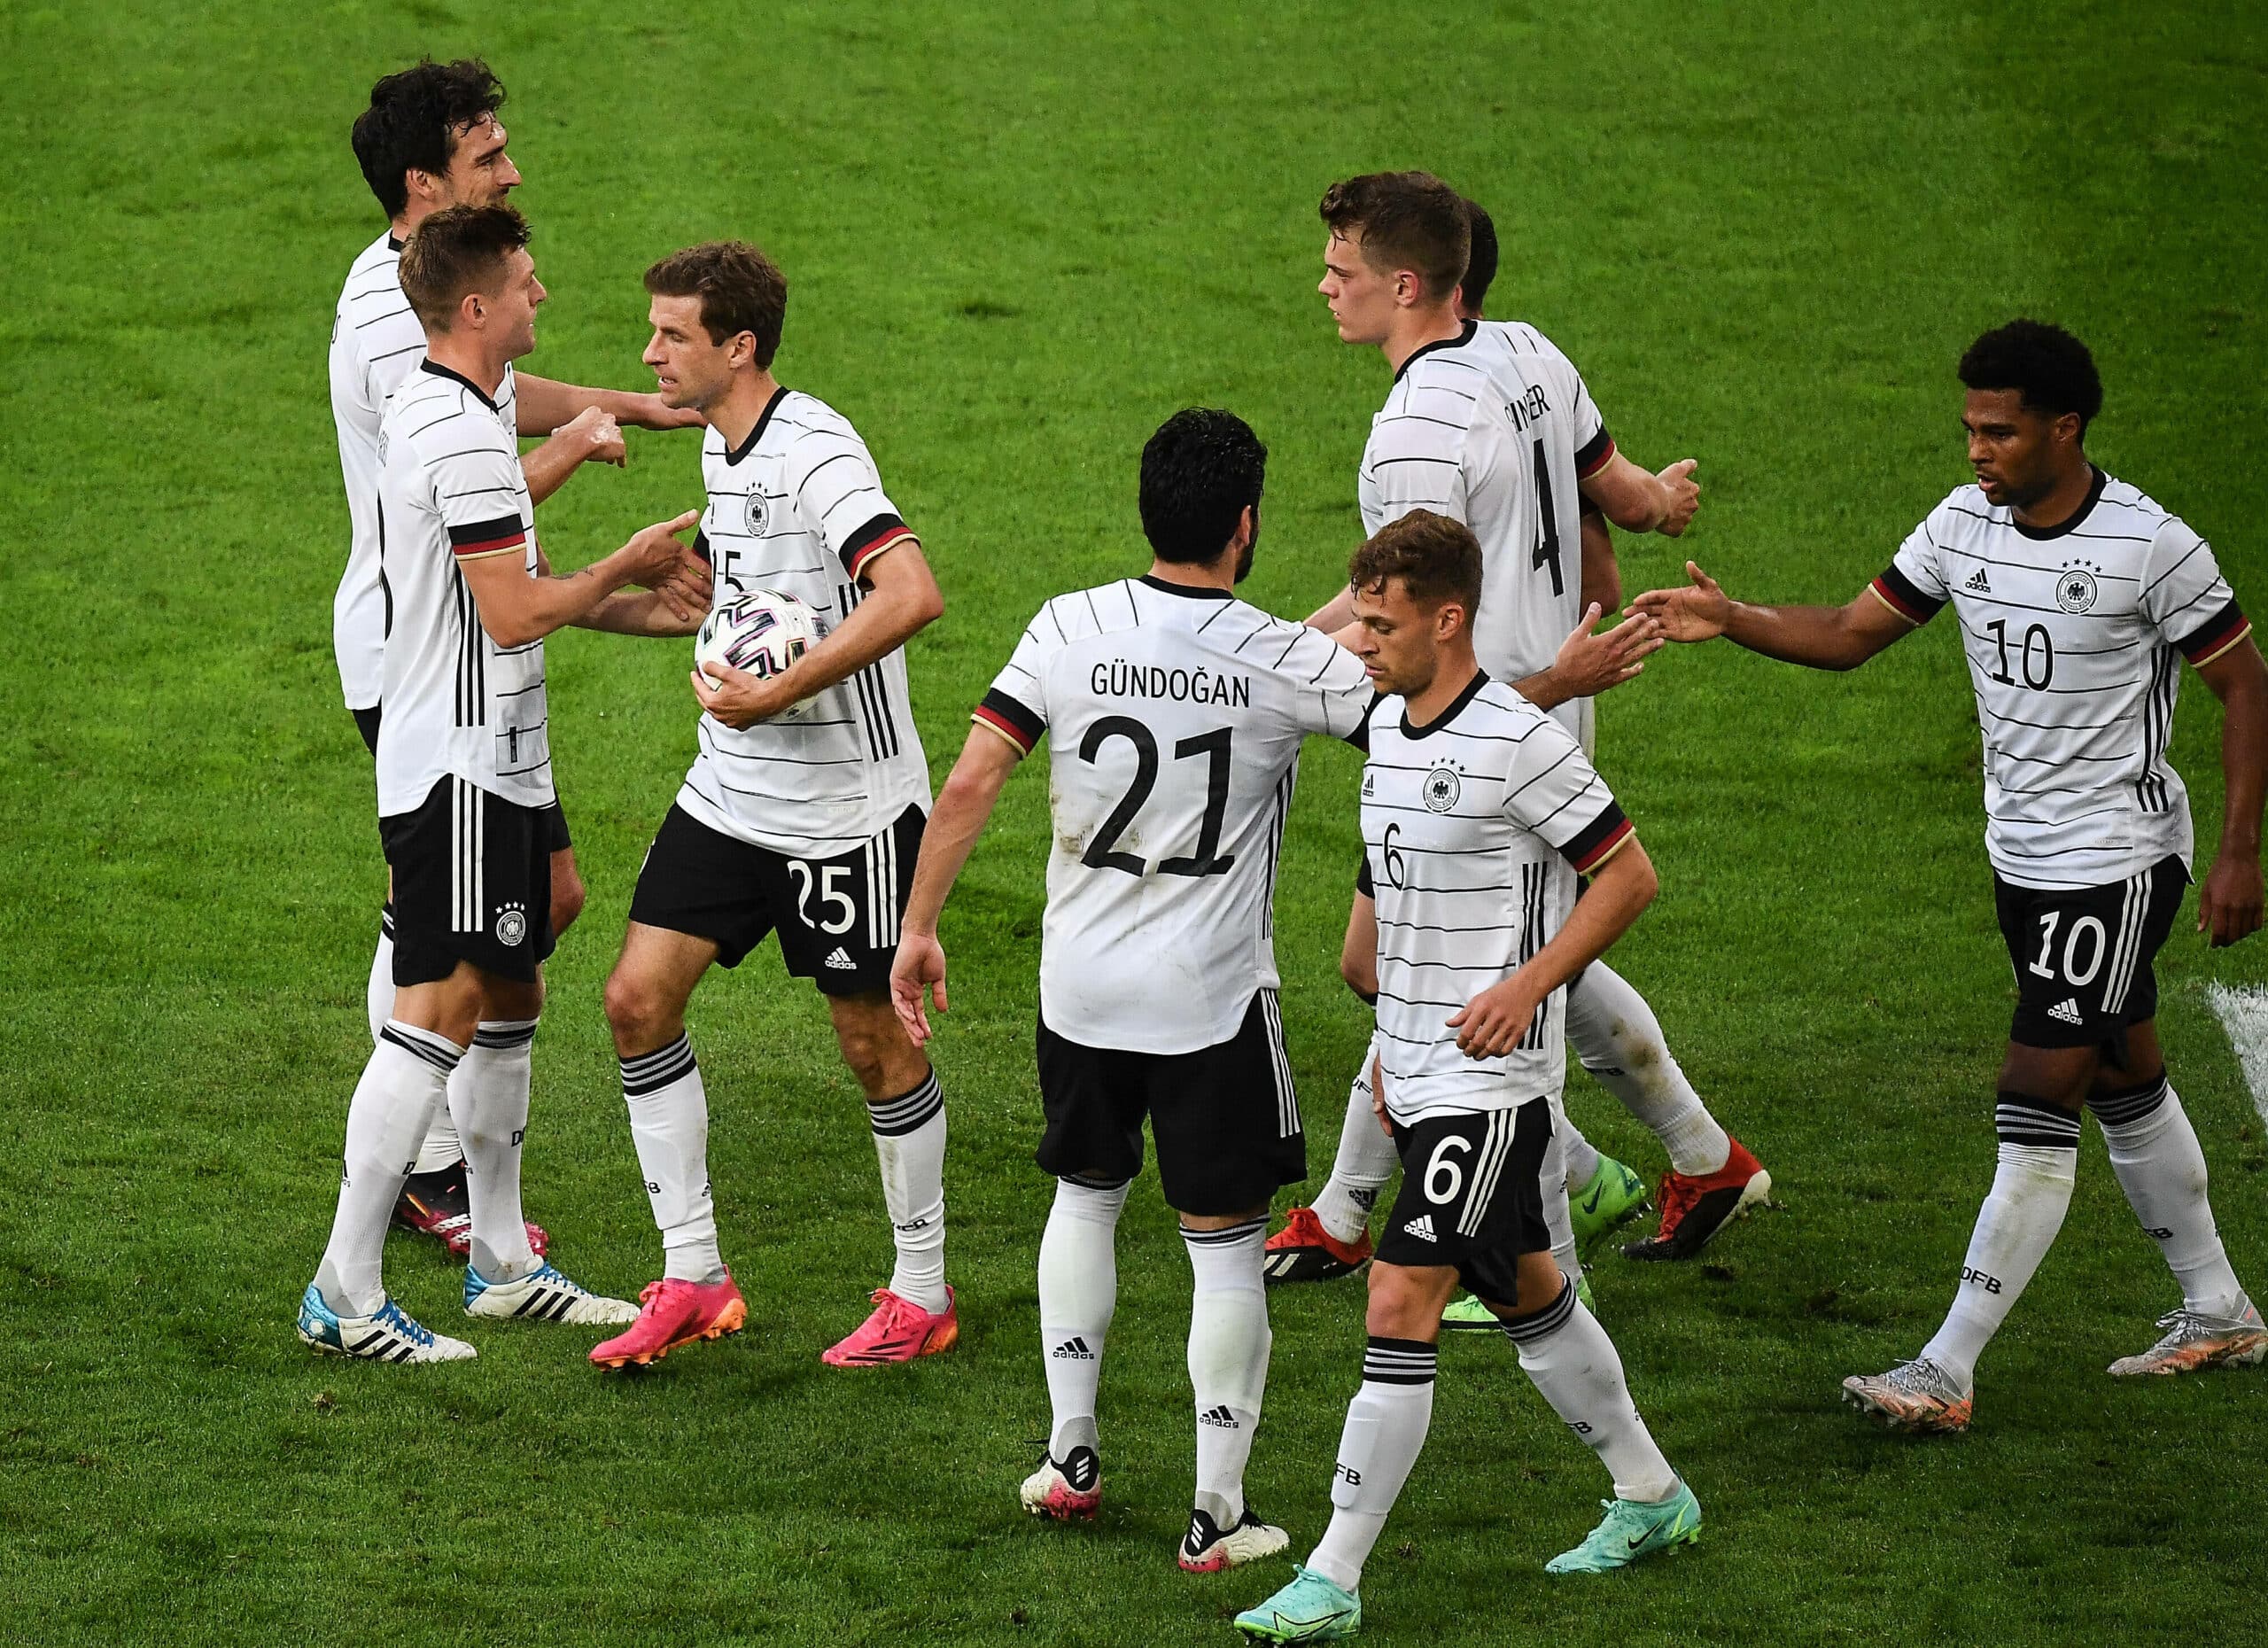 Vorschau EM 2021: Gruppe F mit Deutschland, Portugal, Frankreich und Ungarn